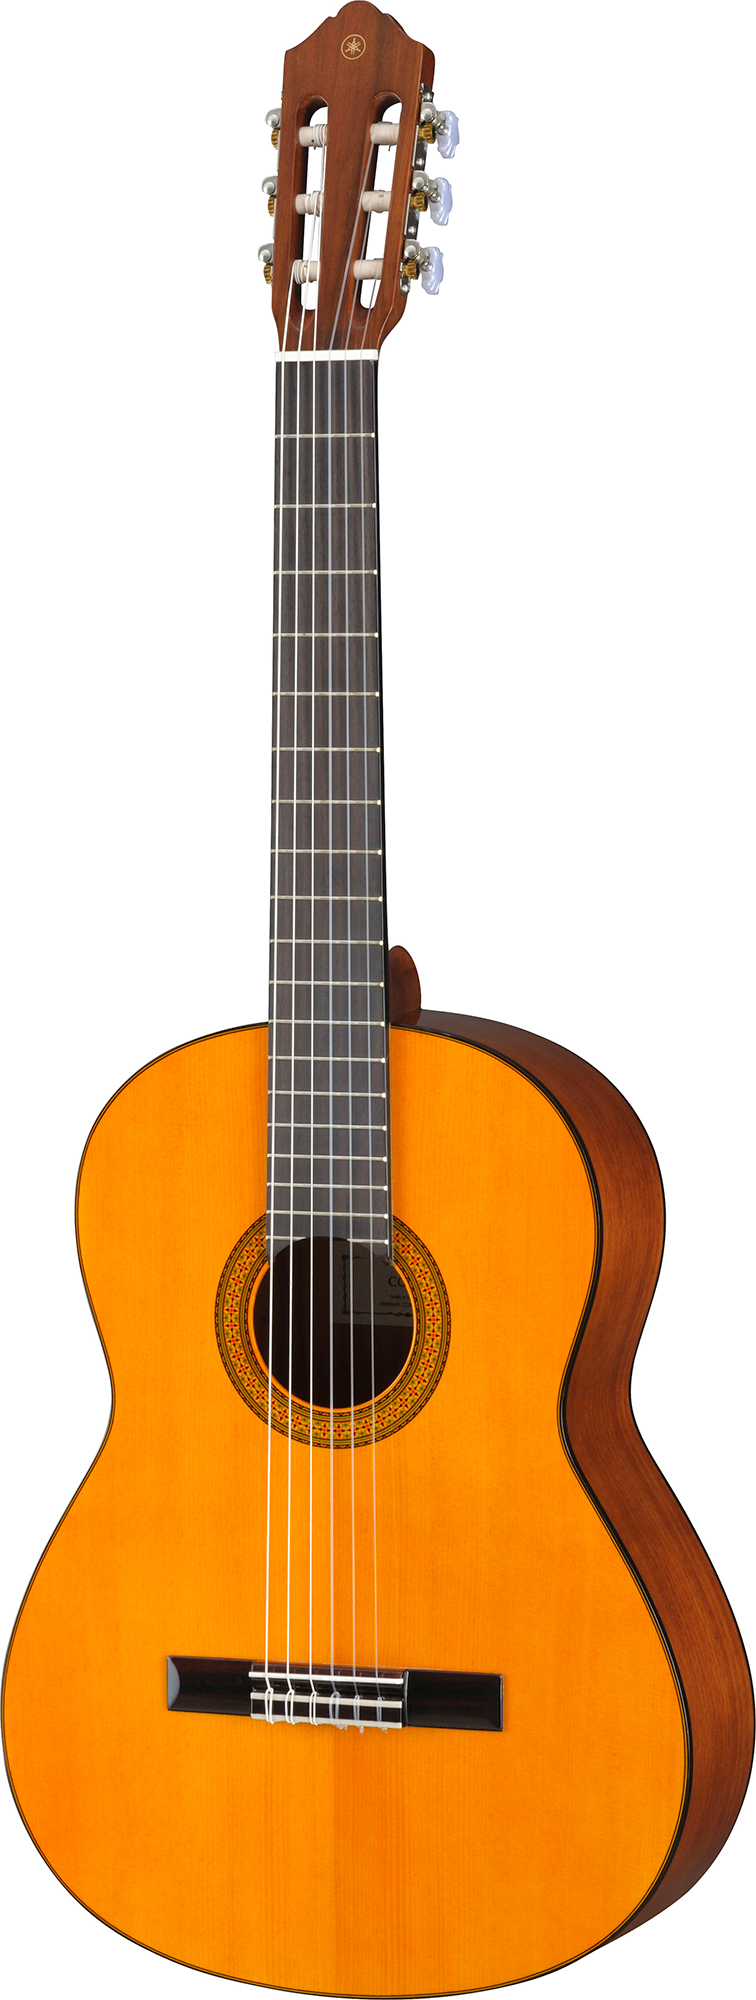 Billede af Yamaha CG102 Klassisk Spansk Guitar